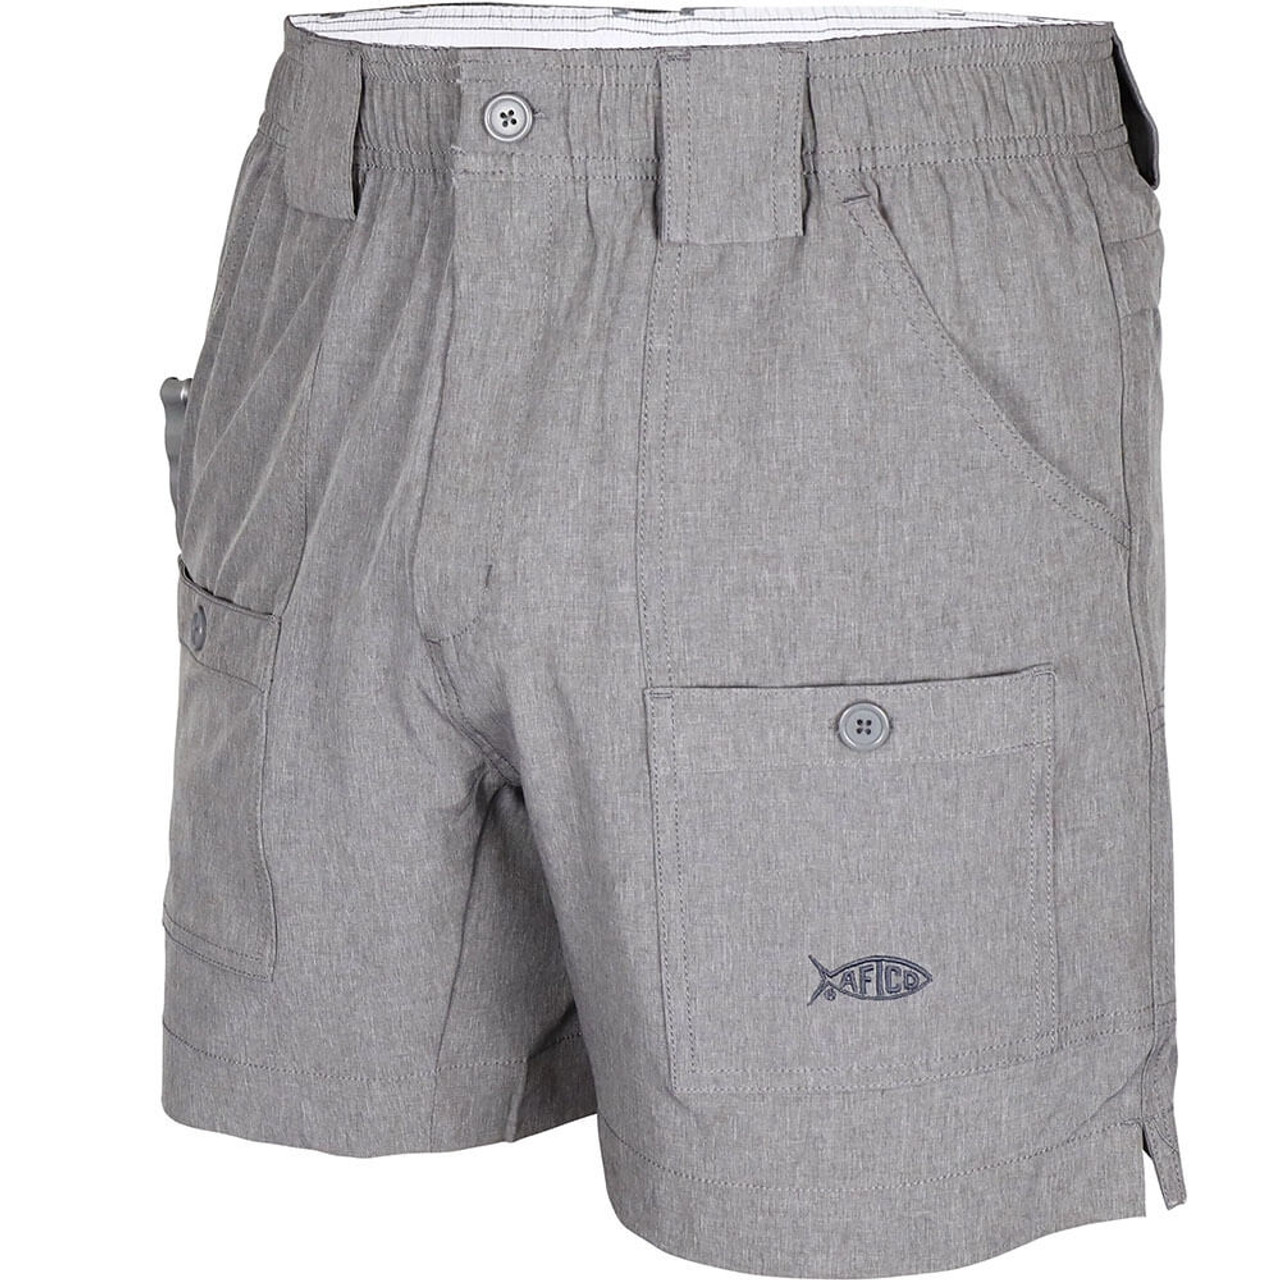 Men's Aftco 6 Stretch Original Shorts